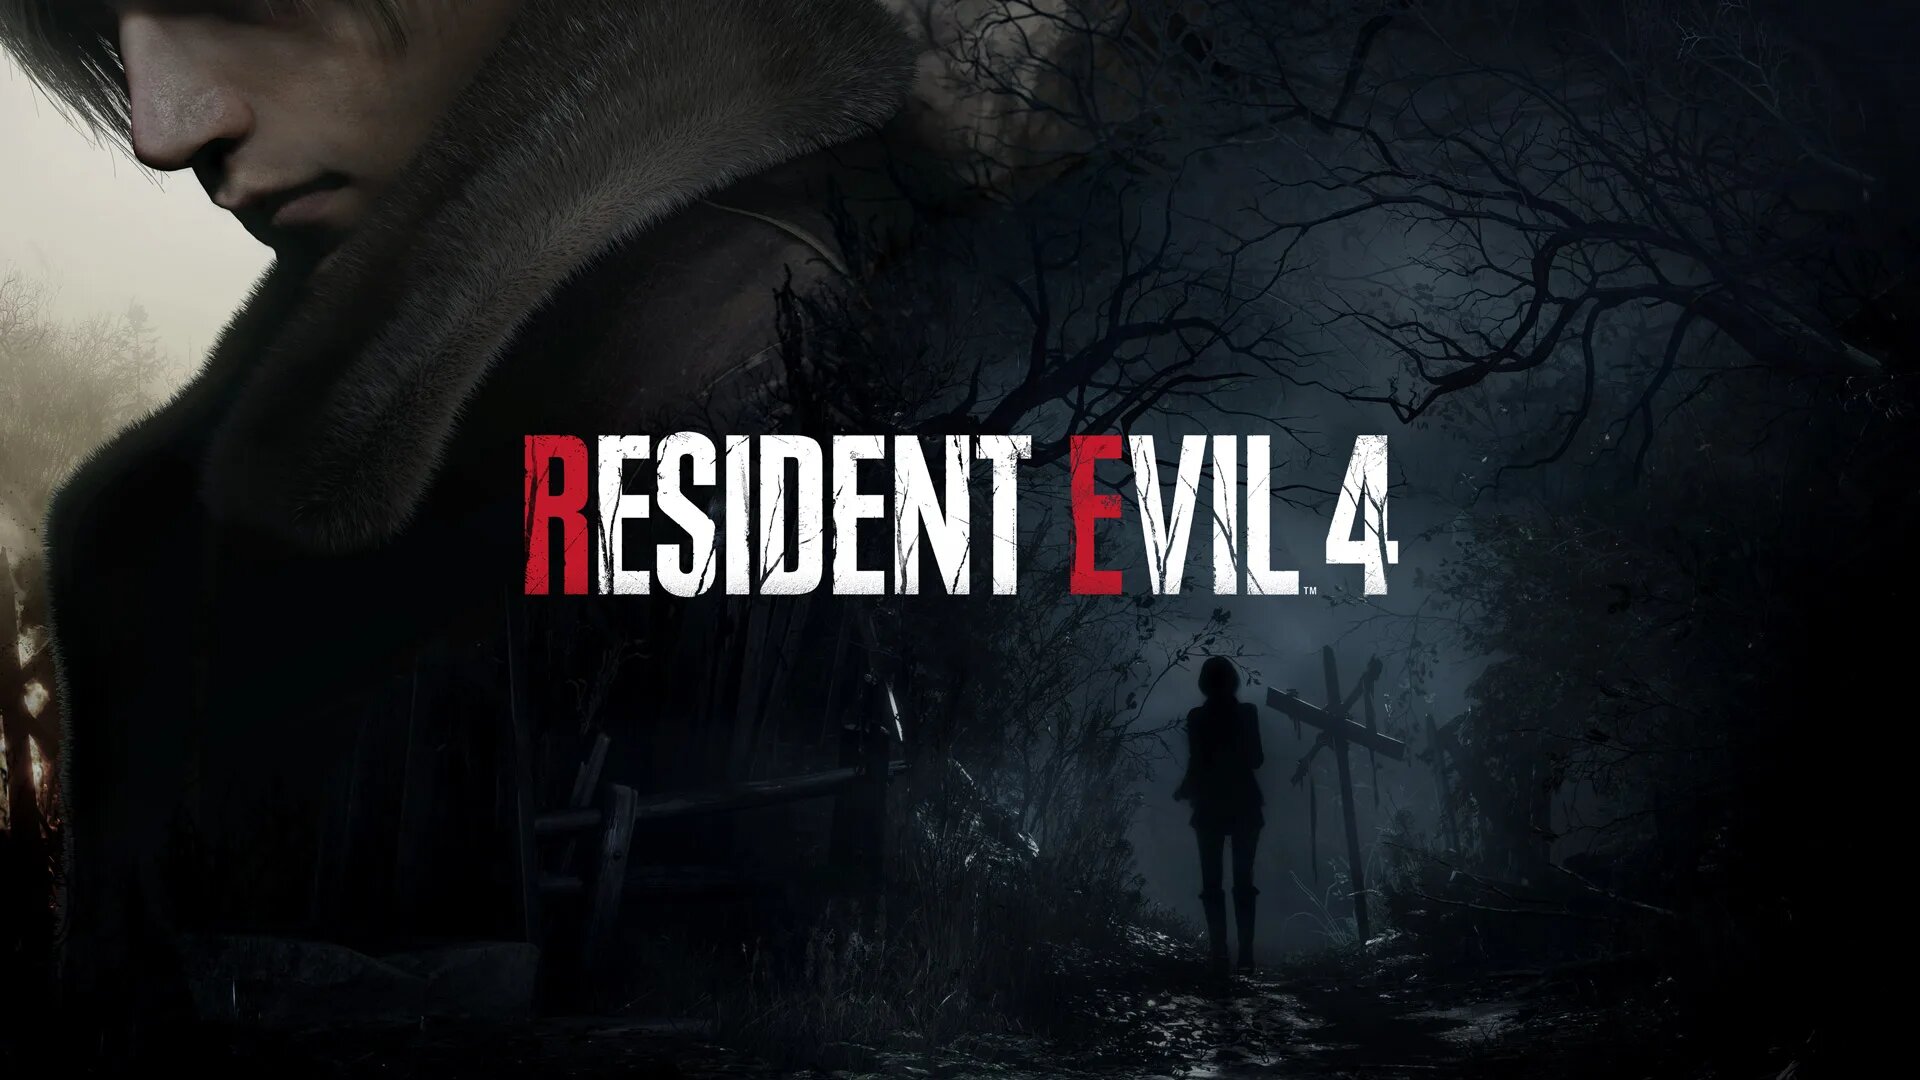 Resident evil 4 remake key art 3